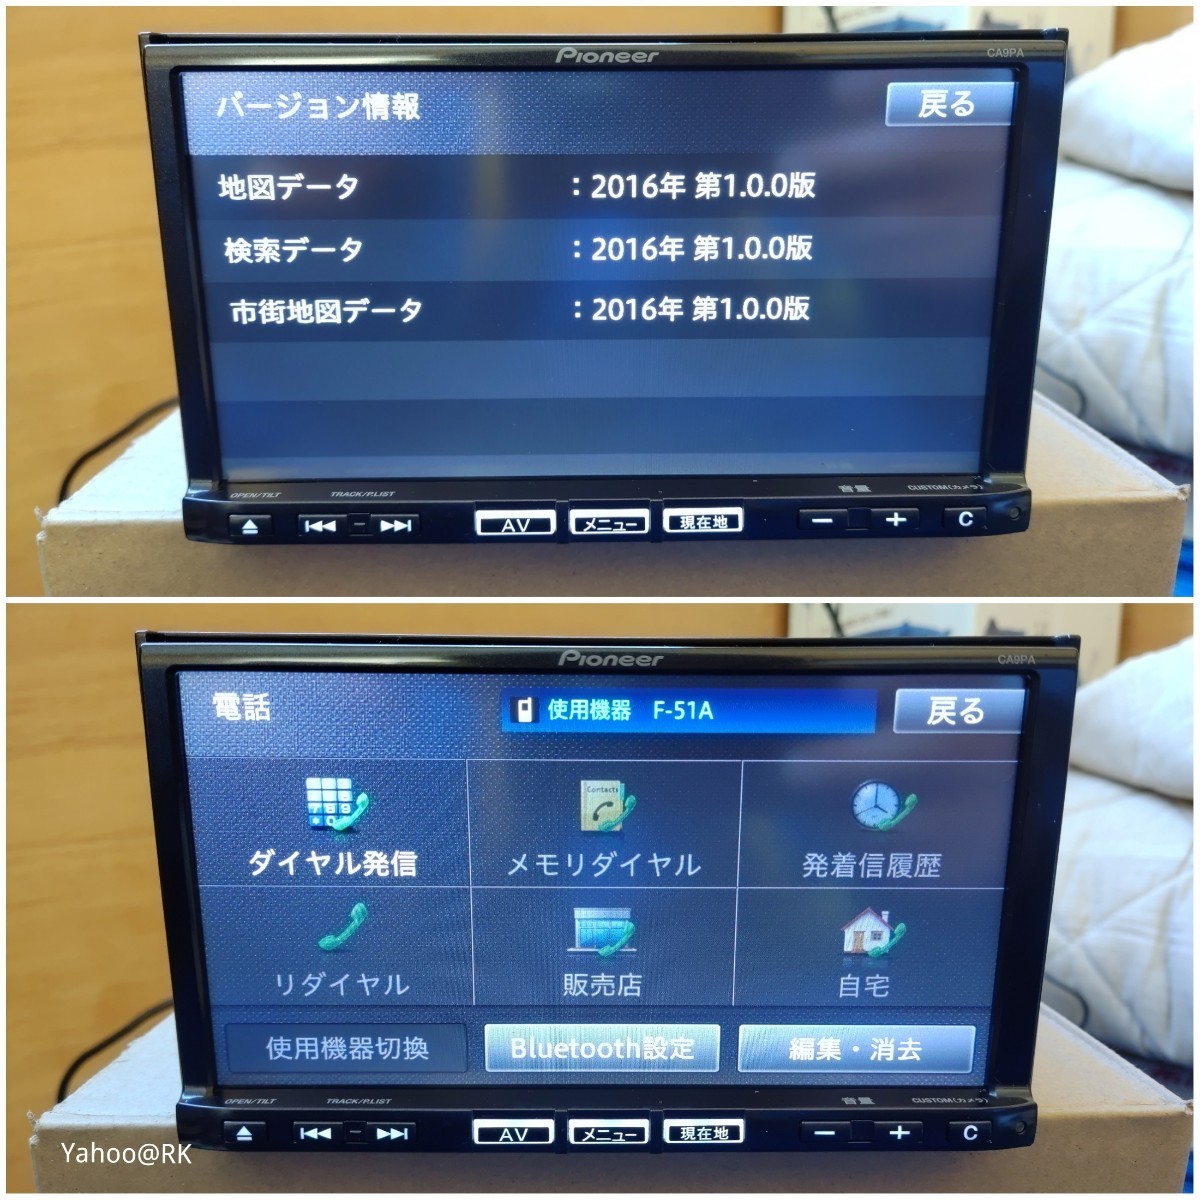 マツダ 純正ナビ 型式 C9PA Pioneer カロッツェリア DVD再生 Bluetooth テレビ フルセグ SDカード USB iPod HDMI CD録音 地図データ2016年の画像6